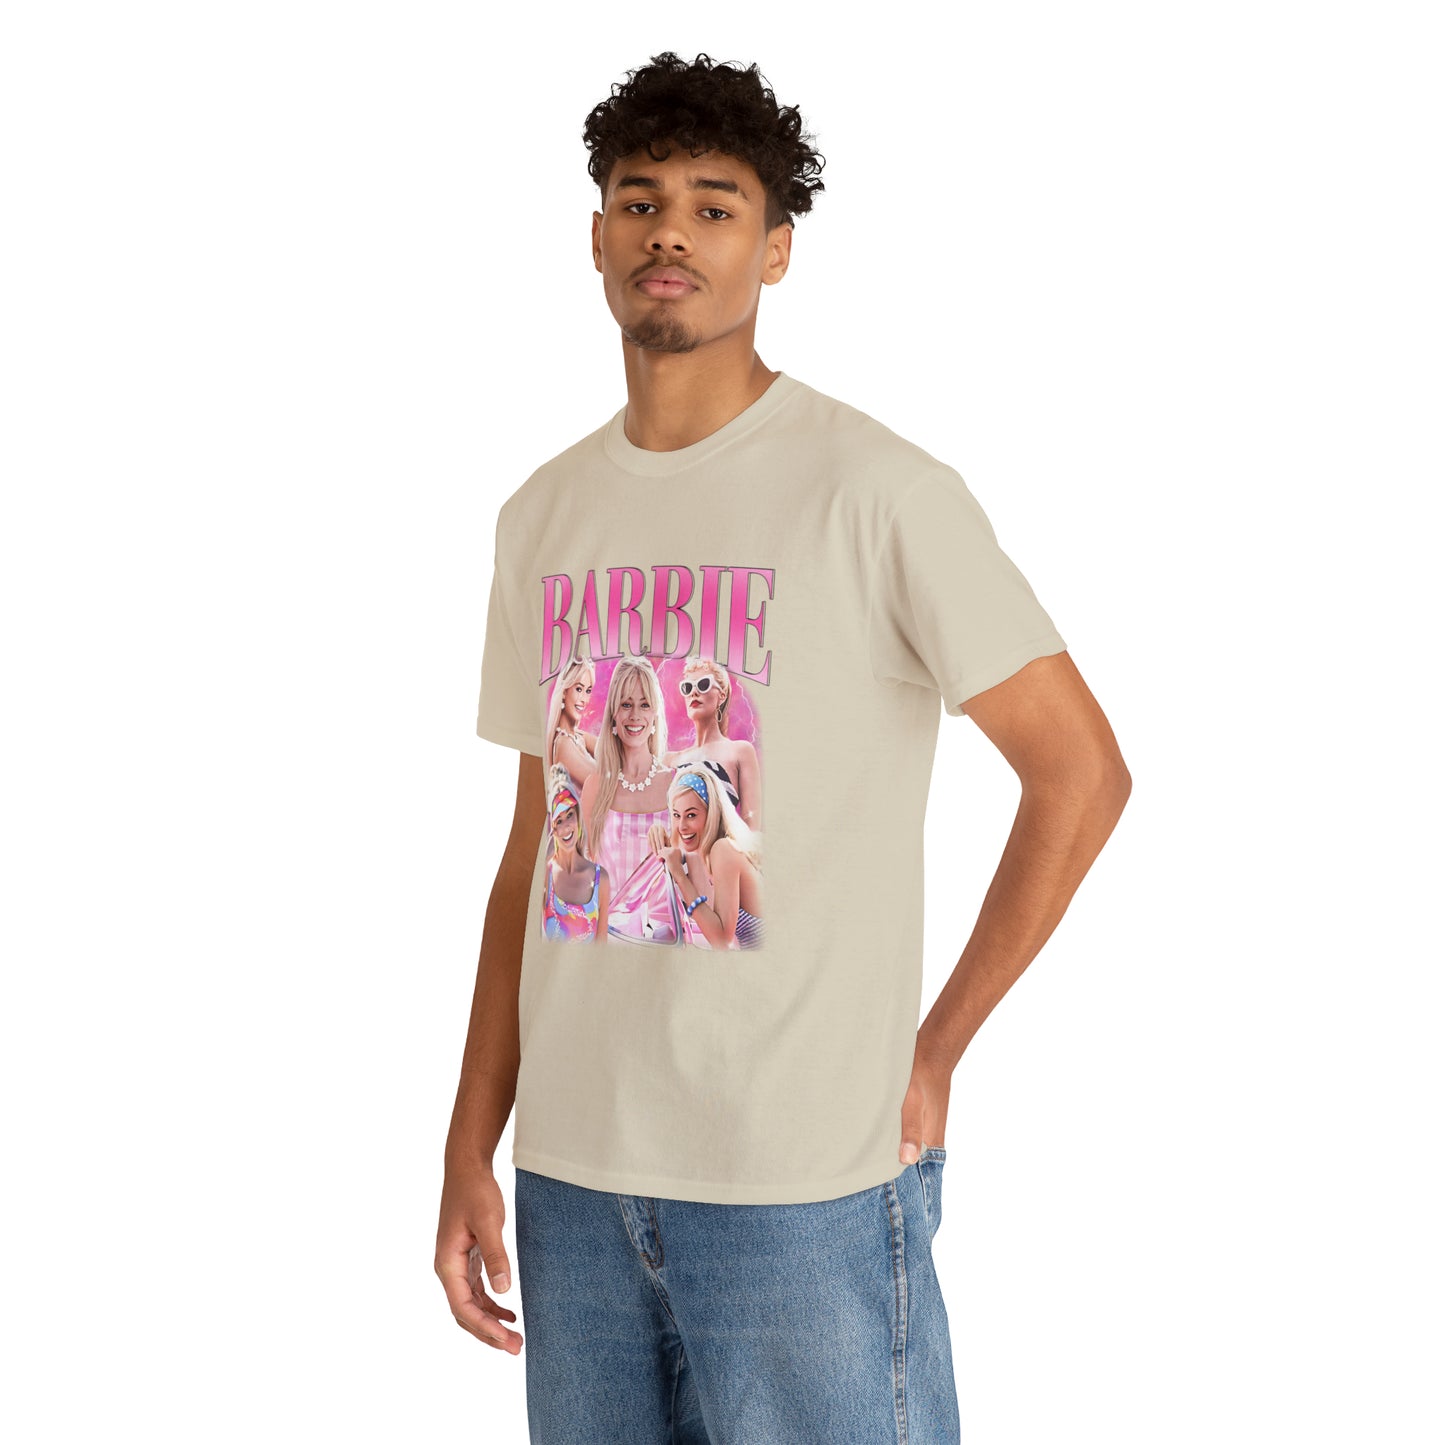 Margot Robbie Barbie 90s Bootleg Rap Vintage T-Shirt, Pop Culture